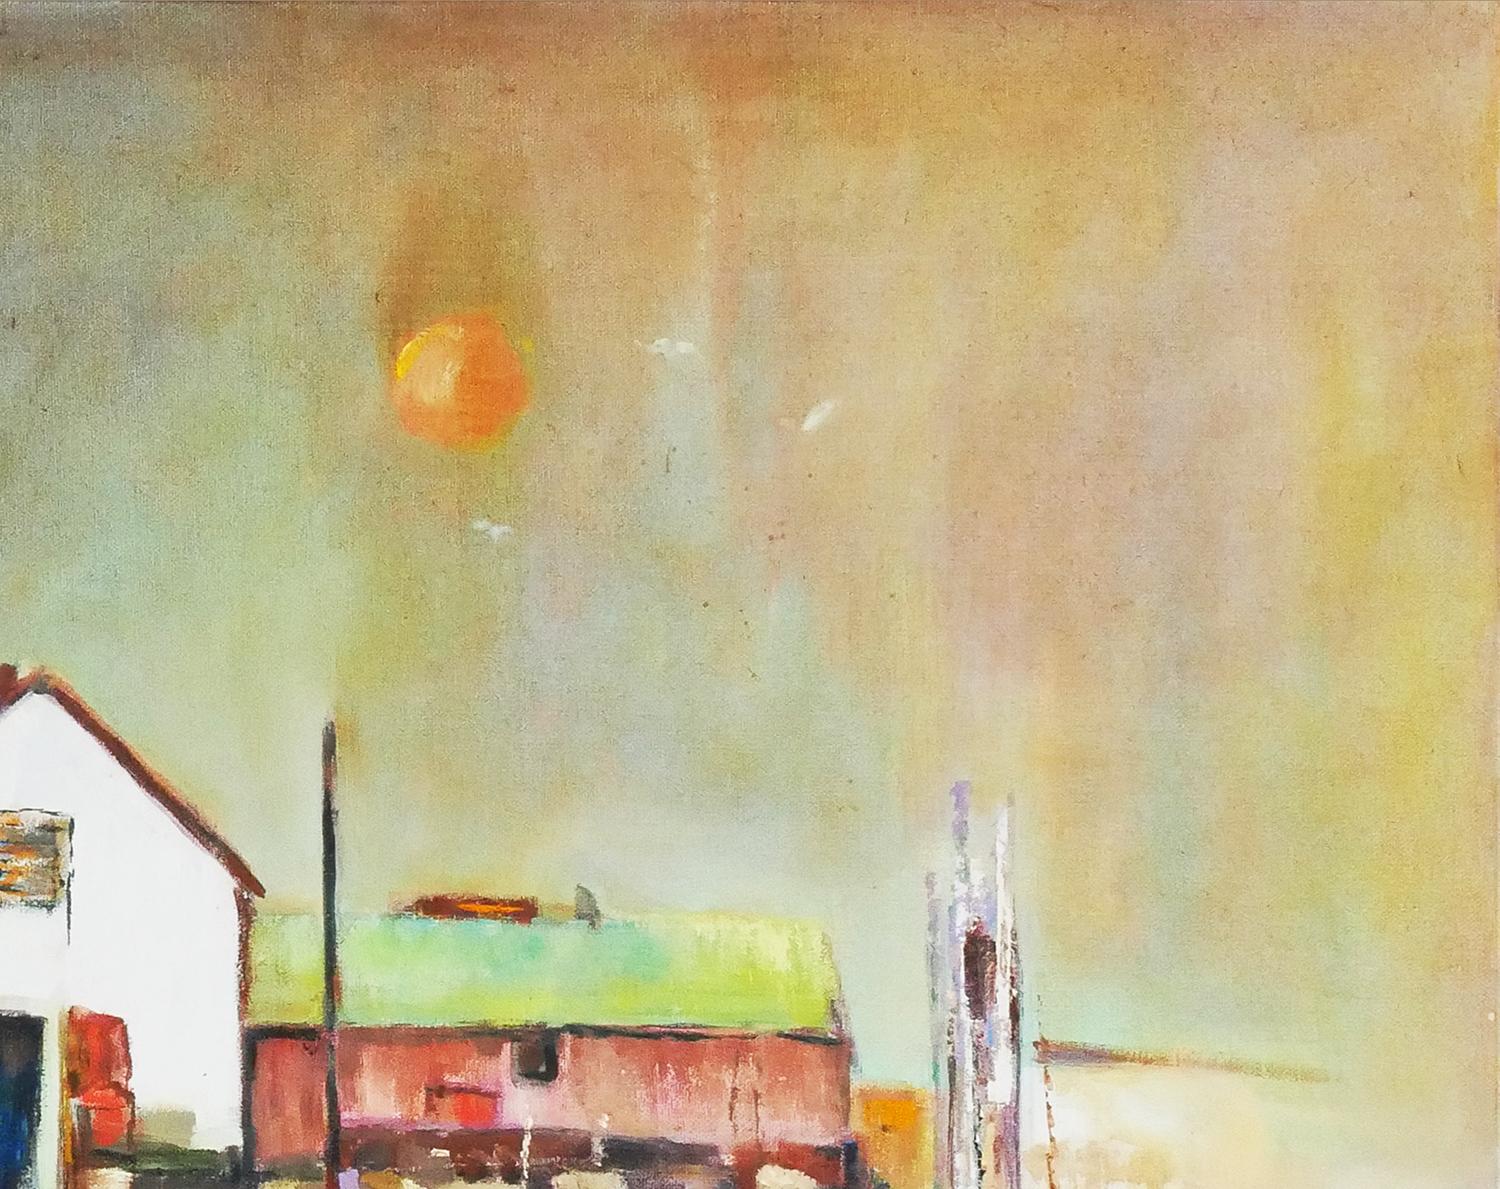 Peinture abstraite moderne de paysage réalisée par l'artiste Margaret Nobler, de Houston, au Texas. L'œuvre représente un bateau flottant près d'un quai au bord de l'océan avec le soleil couchant en arrière-plan. Signé par l'artiste dans le coin